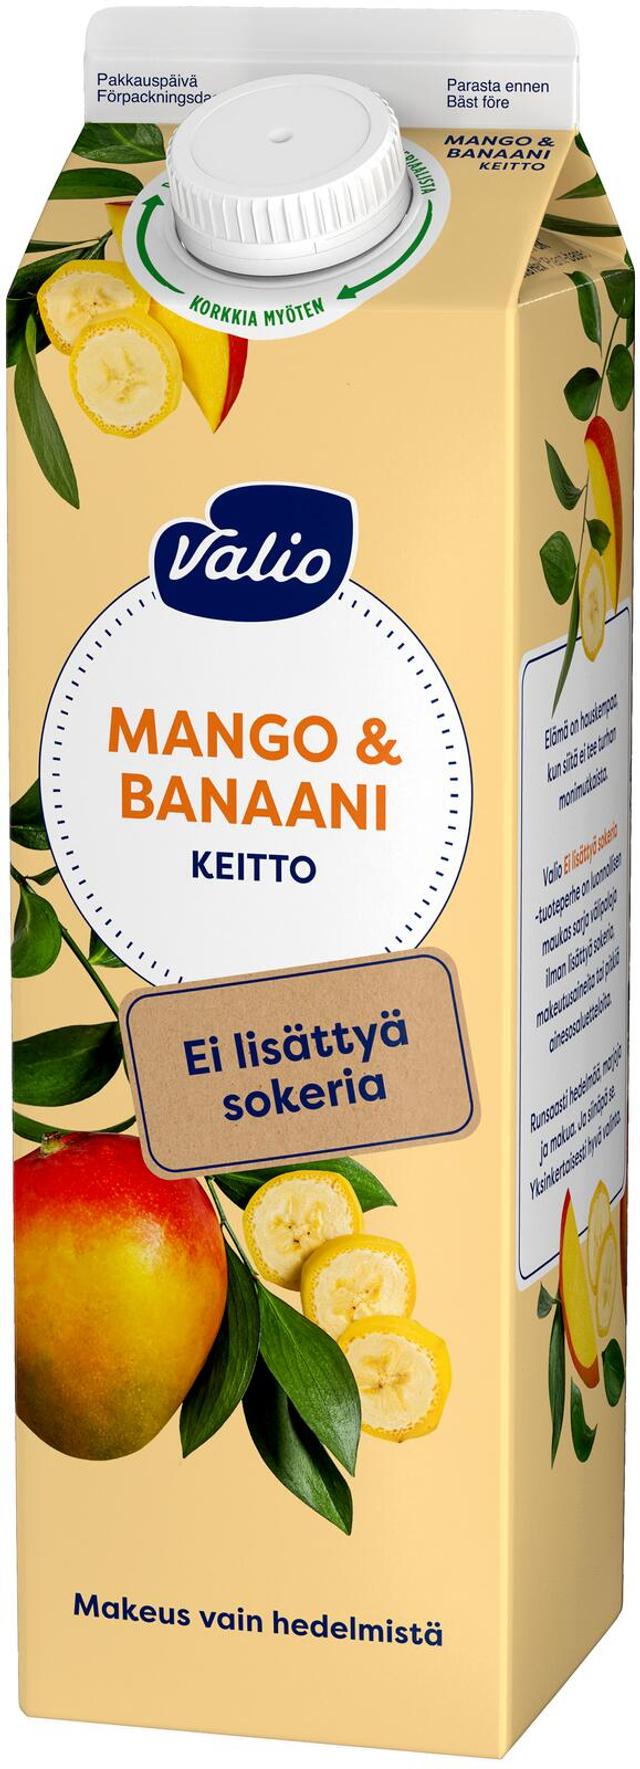 Valio mango-banaanikeitto 1 kg ei lisättyä sokeria, makeutusaineeton